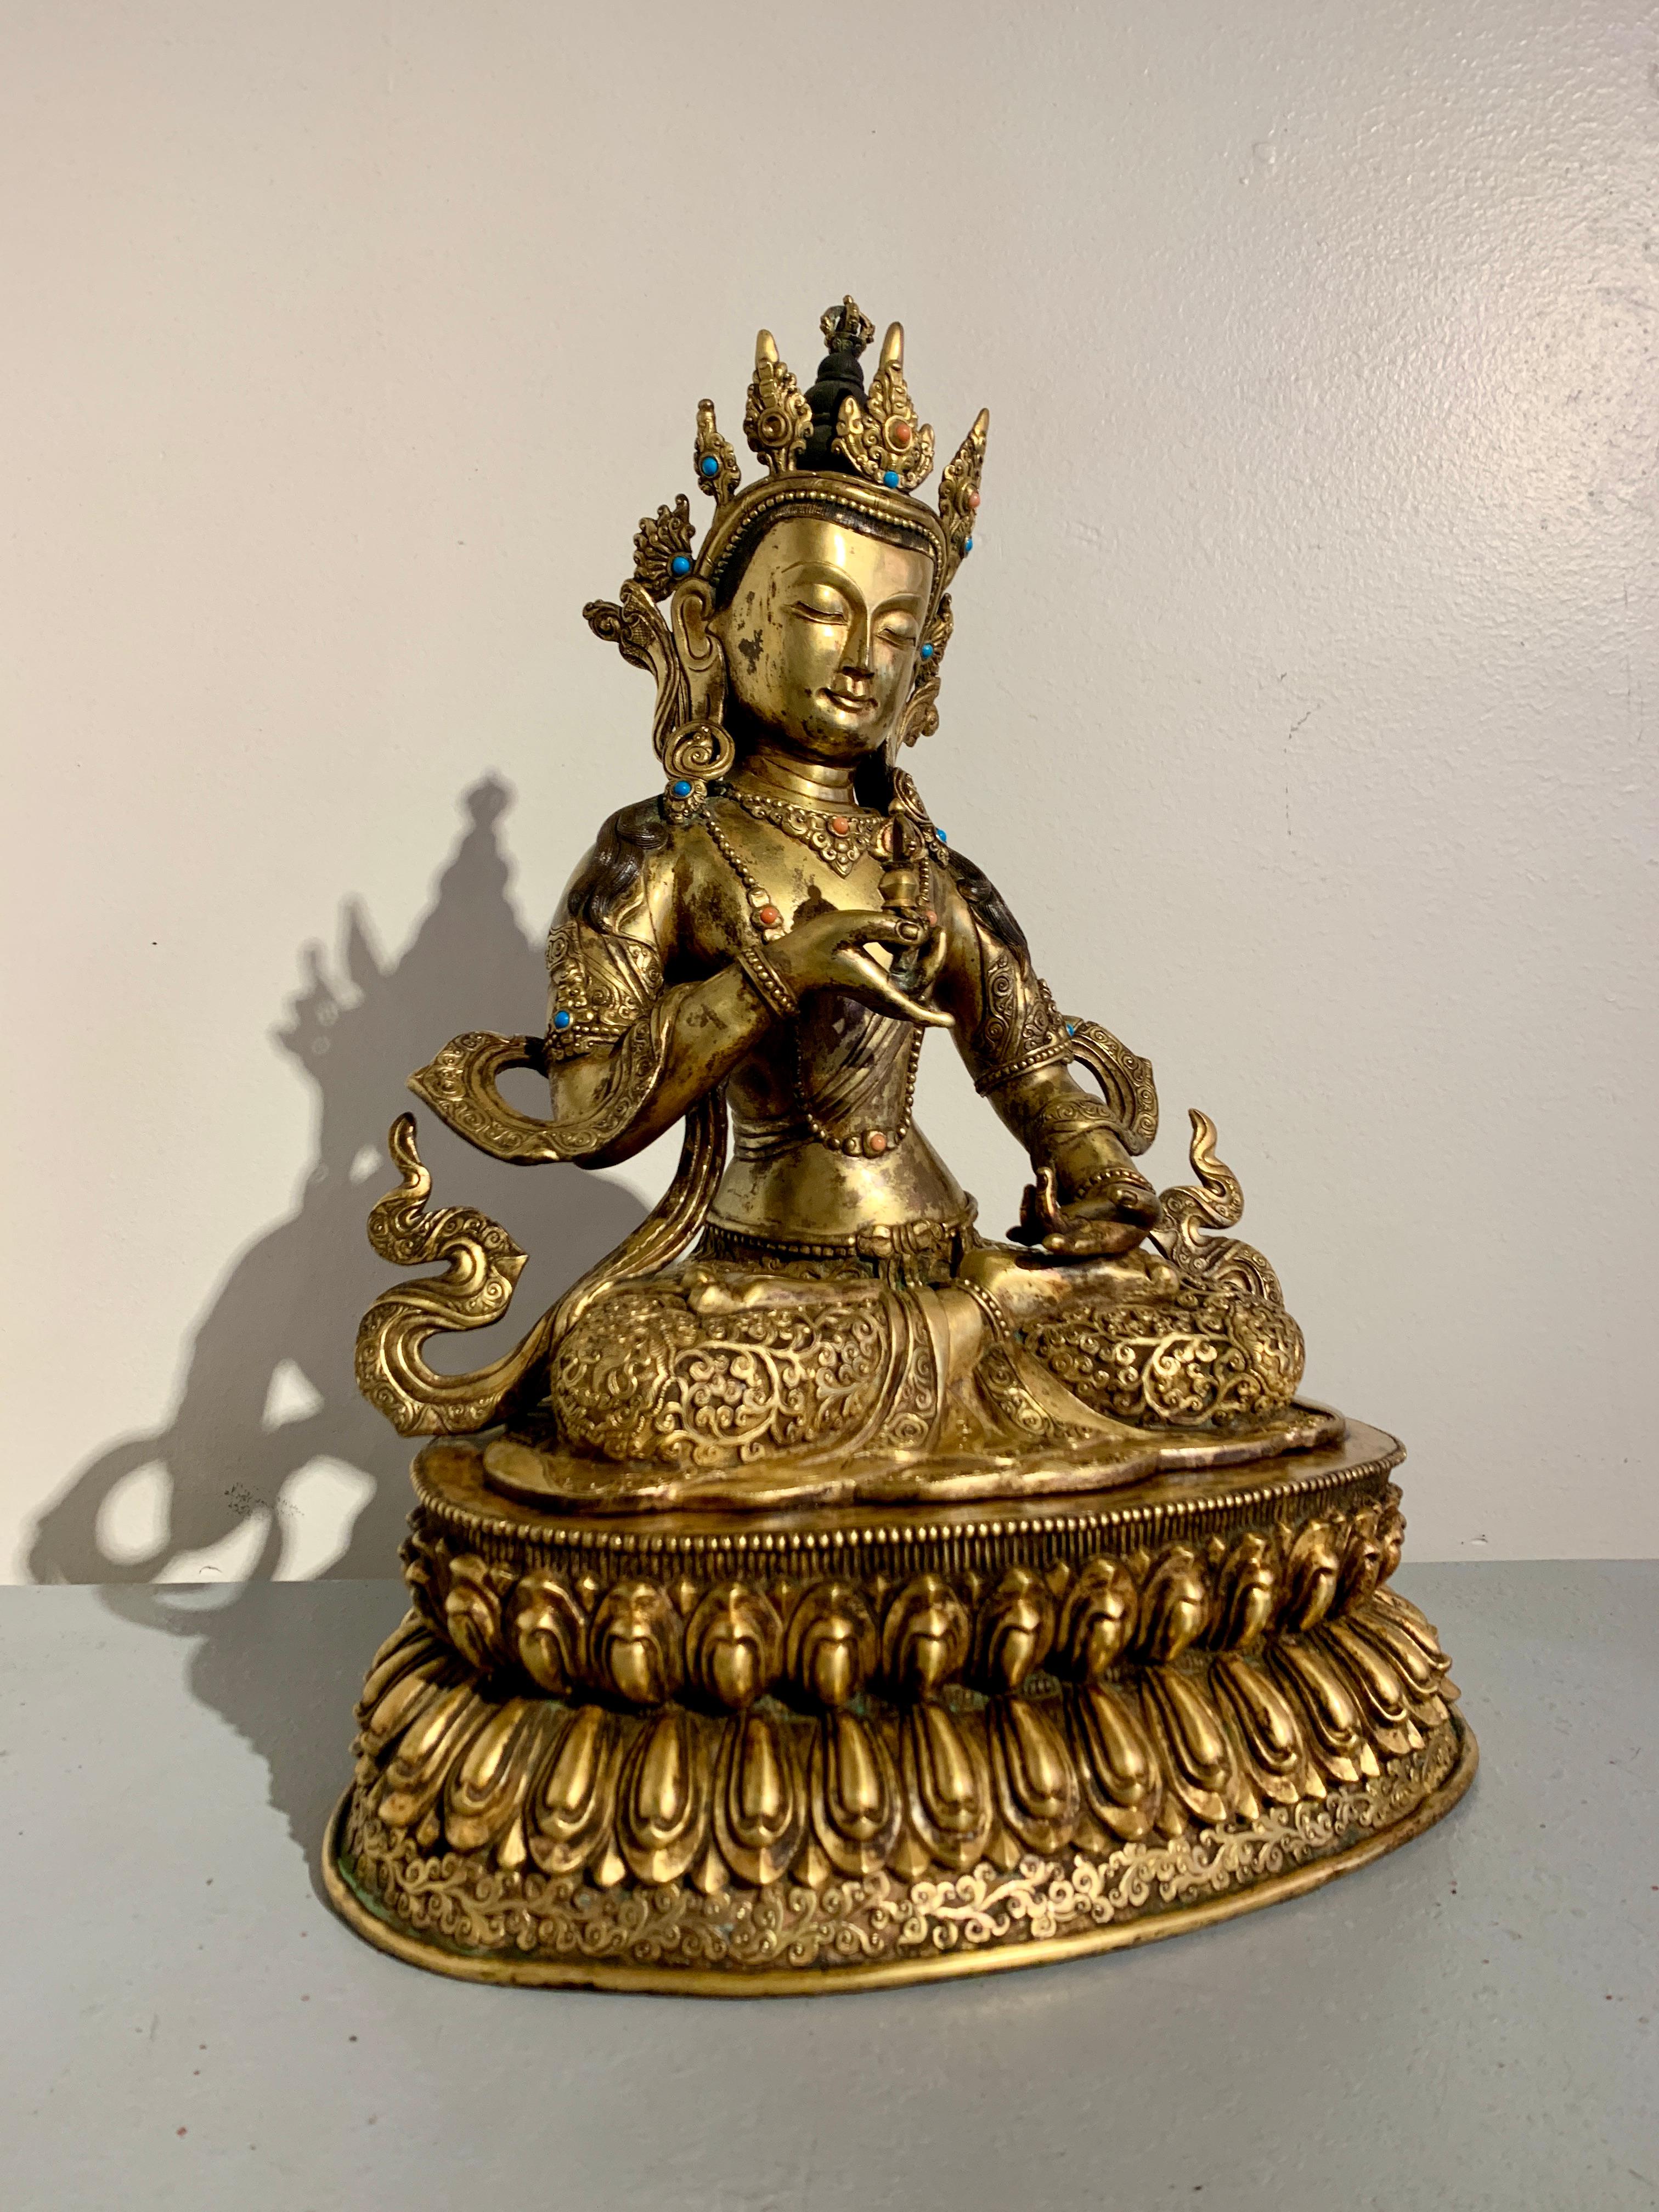 Grande et impressionnante figure vintage en bronze doré du Bouddha tantrique Vajrasattva, l'éclair de diamant, milieu du 20e siècle, Népal. 

Réalisé en bronze moulé et richement doré, Vajrasattva est assis en vajrasana, ou position du lotus, le